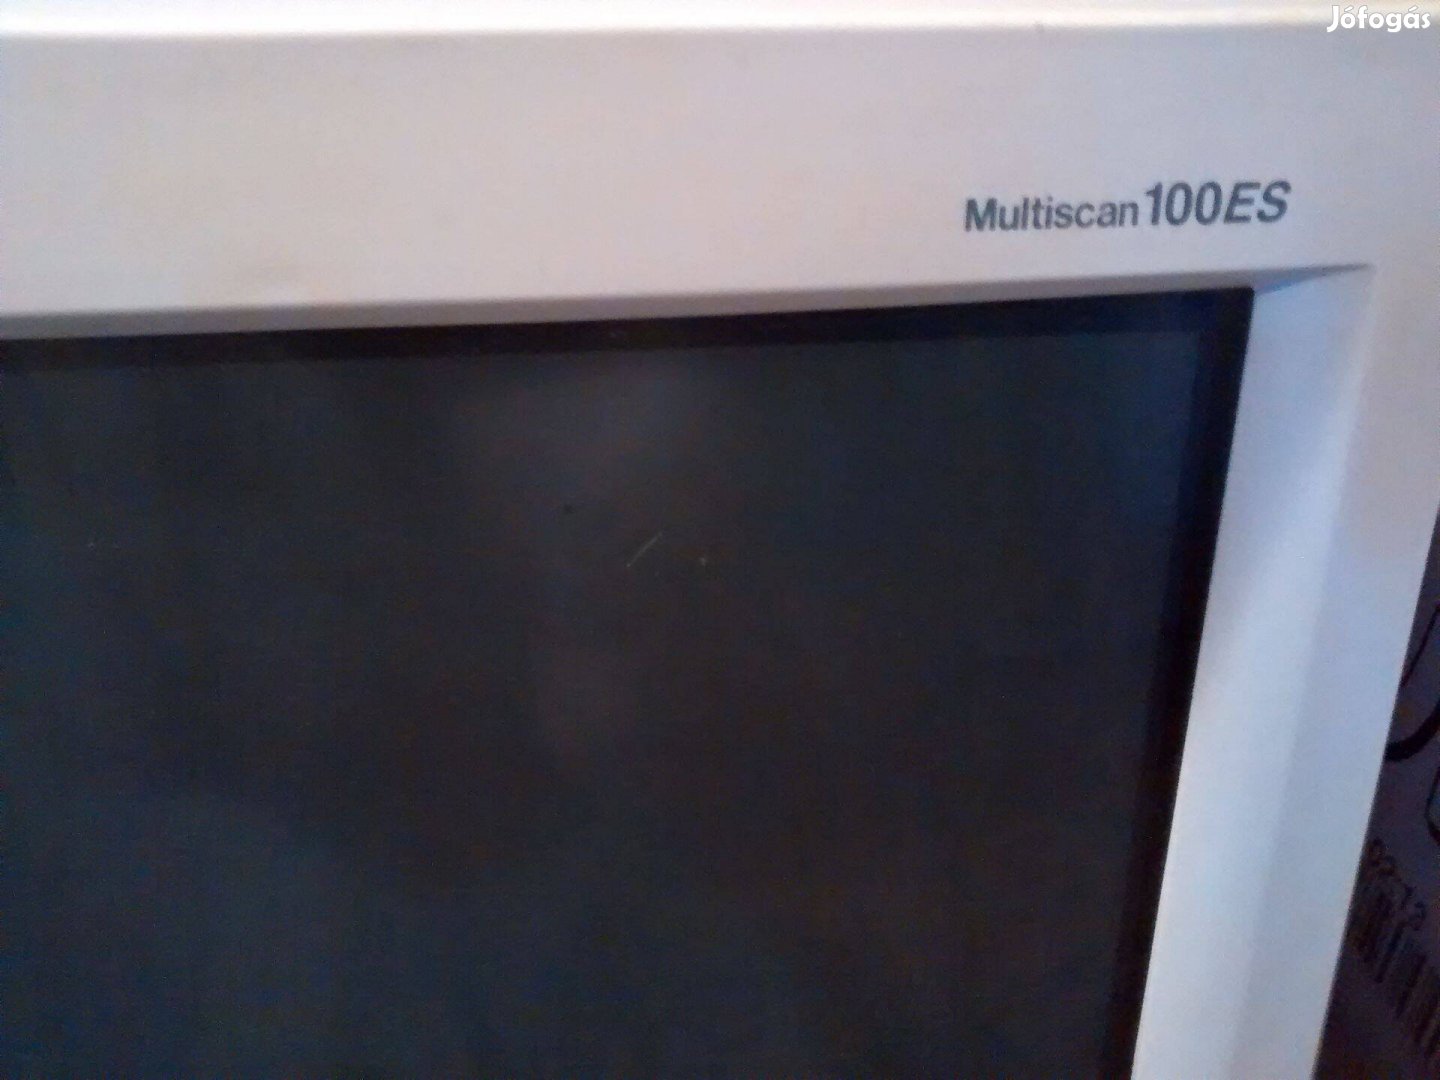 Sony, Multiscan 100Es típusú, Trinitron képcsöves CRT monitor eladó